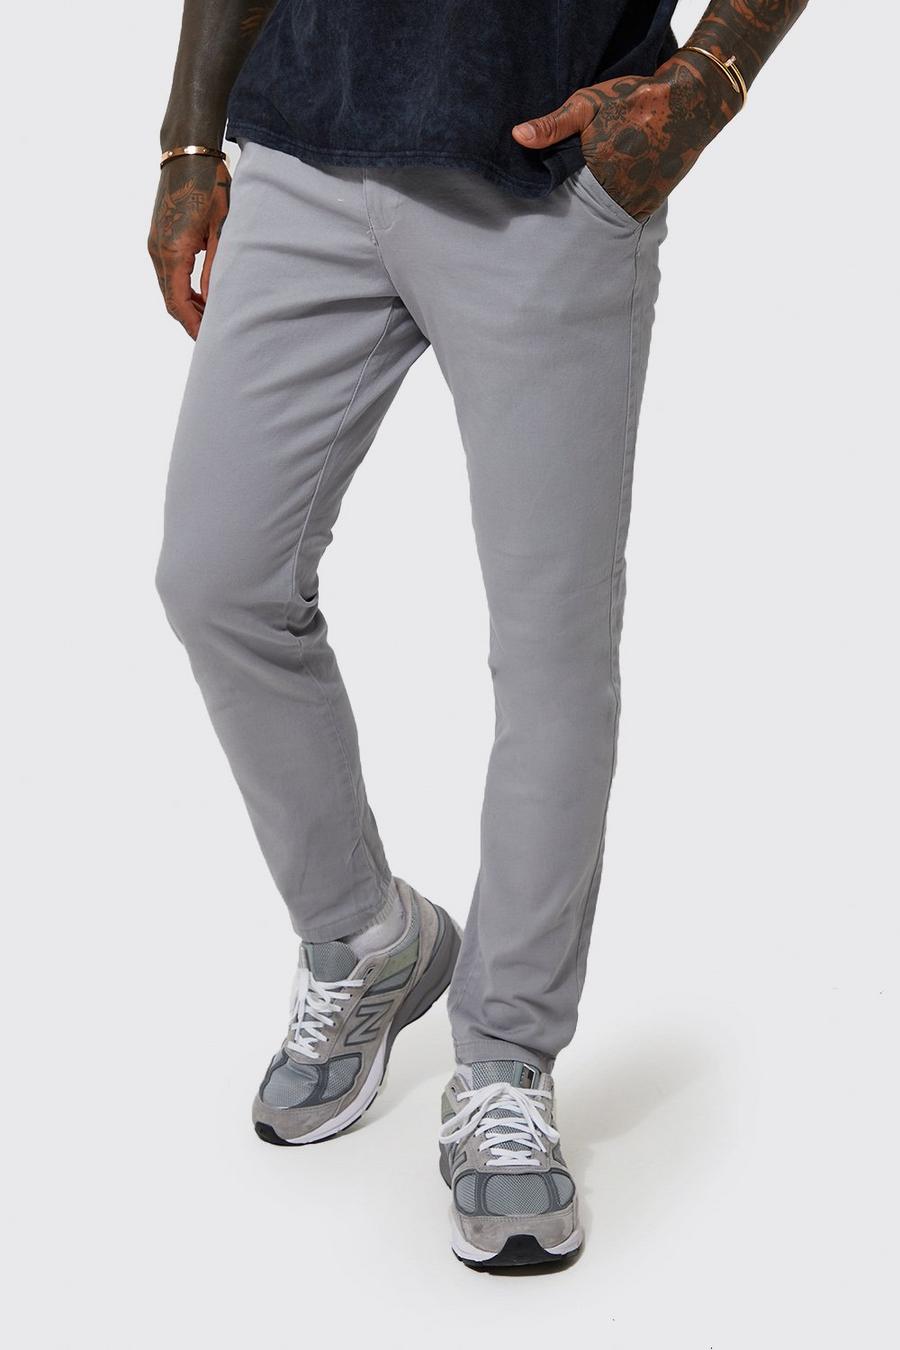 Pantalón chino pitillo, Grey gris